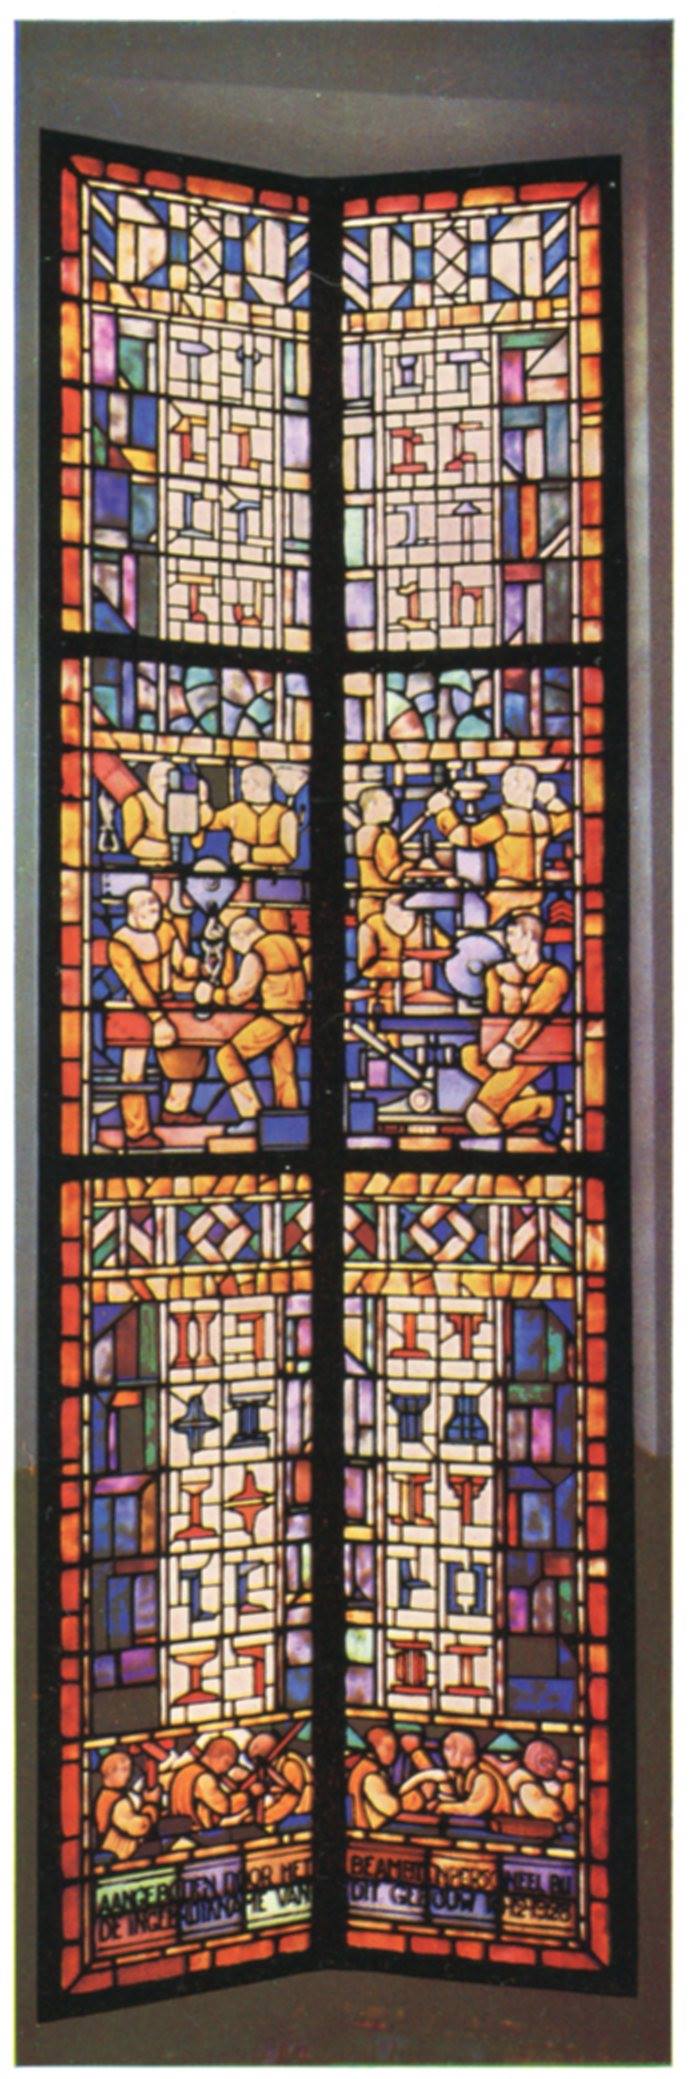 In het trappenhuis van het kantoor van de Vries Robbé zat dit prachtige gebrandschilderde raam, aangeboden door het personeel aan de Directie bij de opening van het pand in 1928.